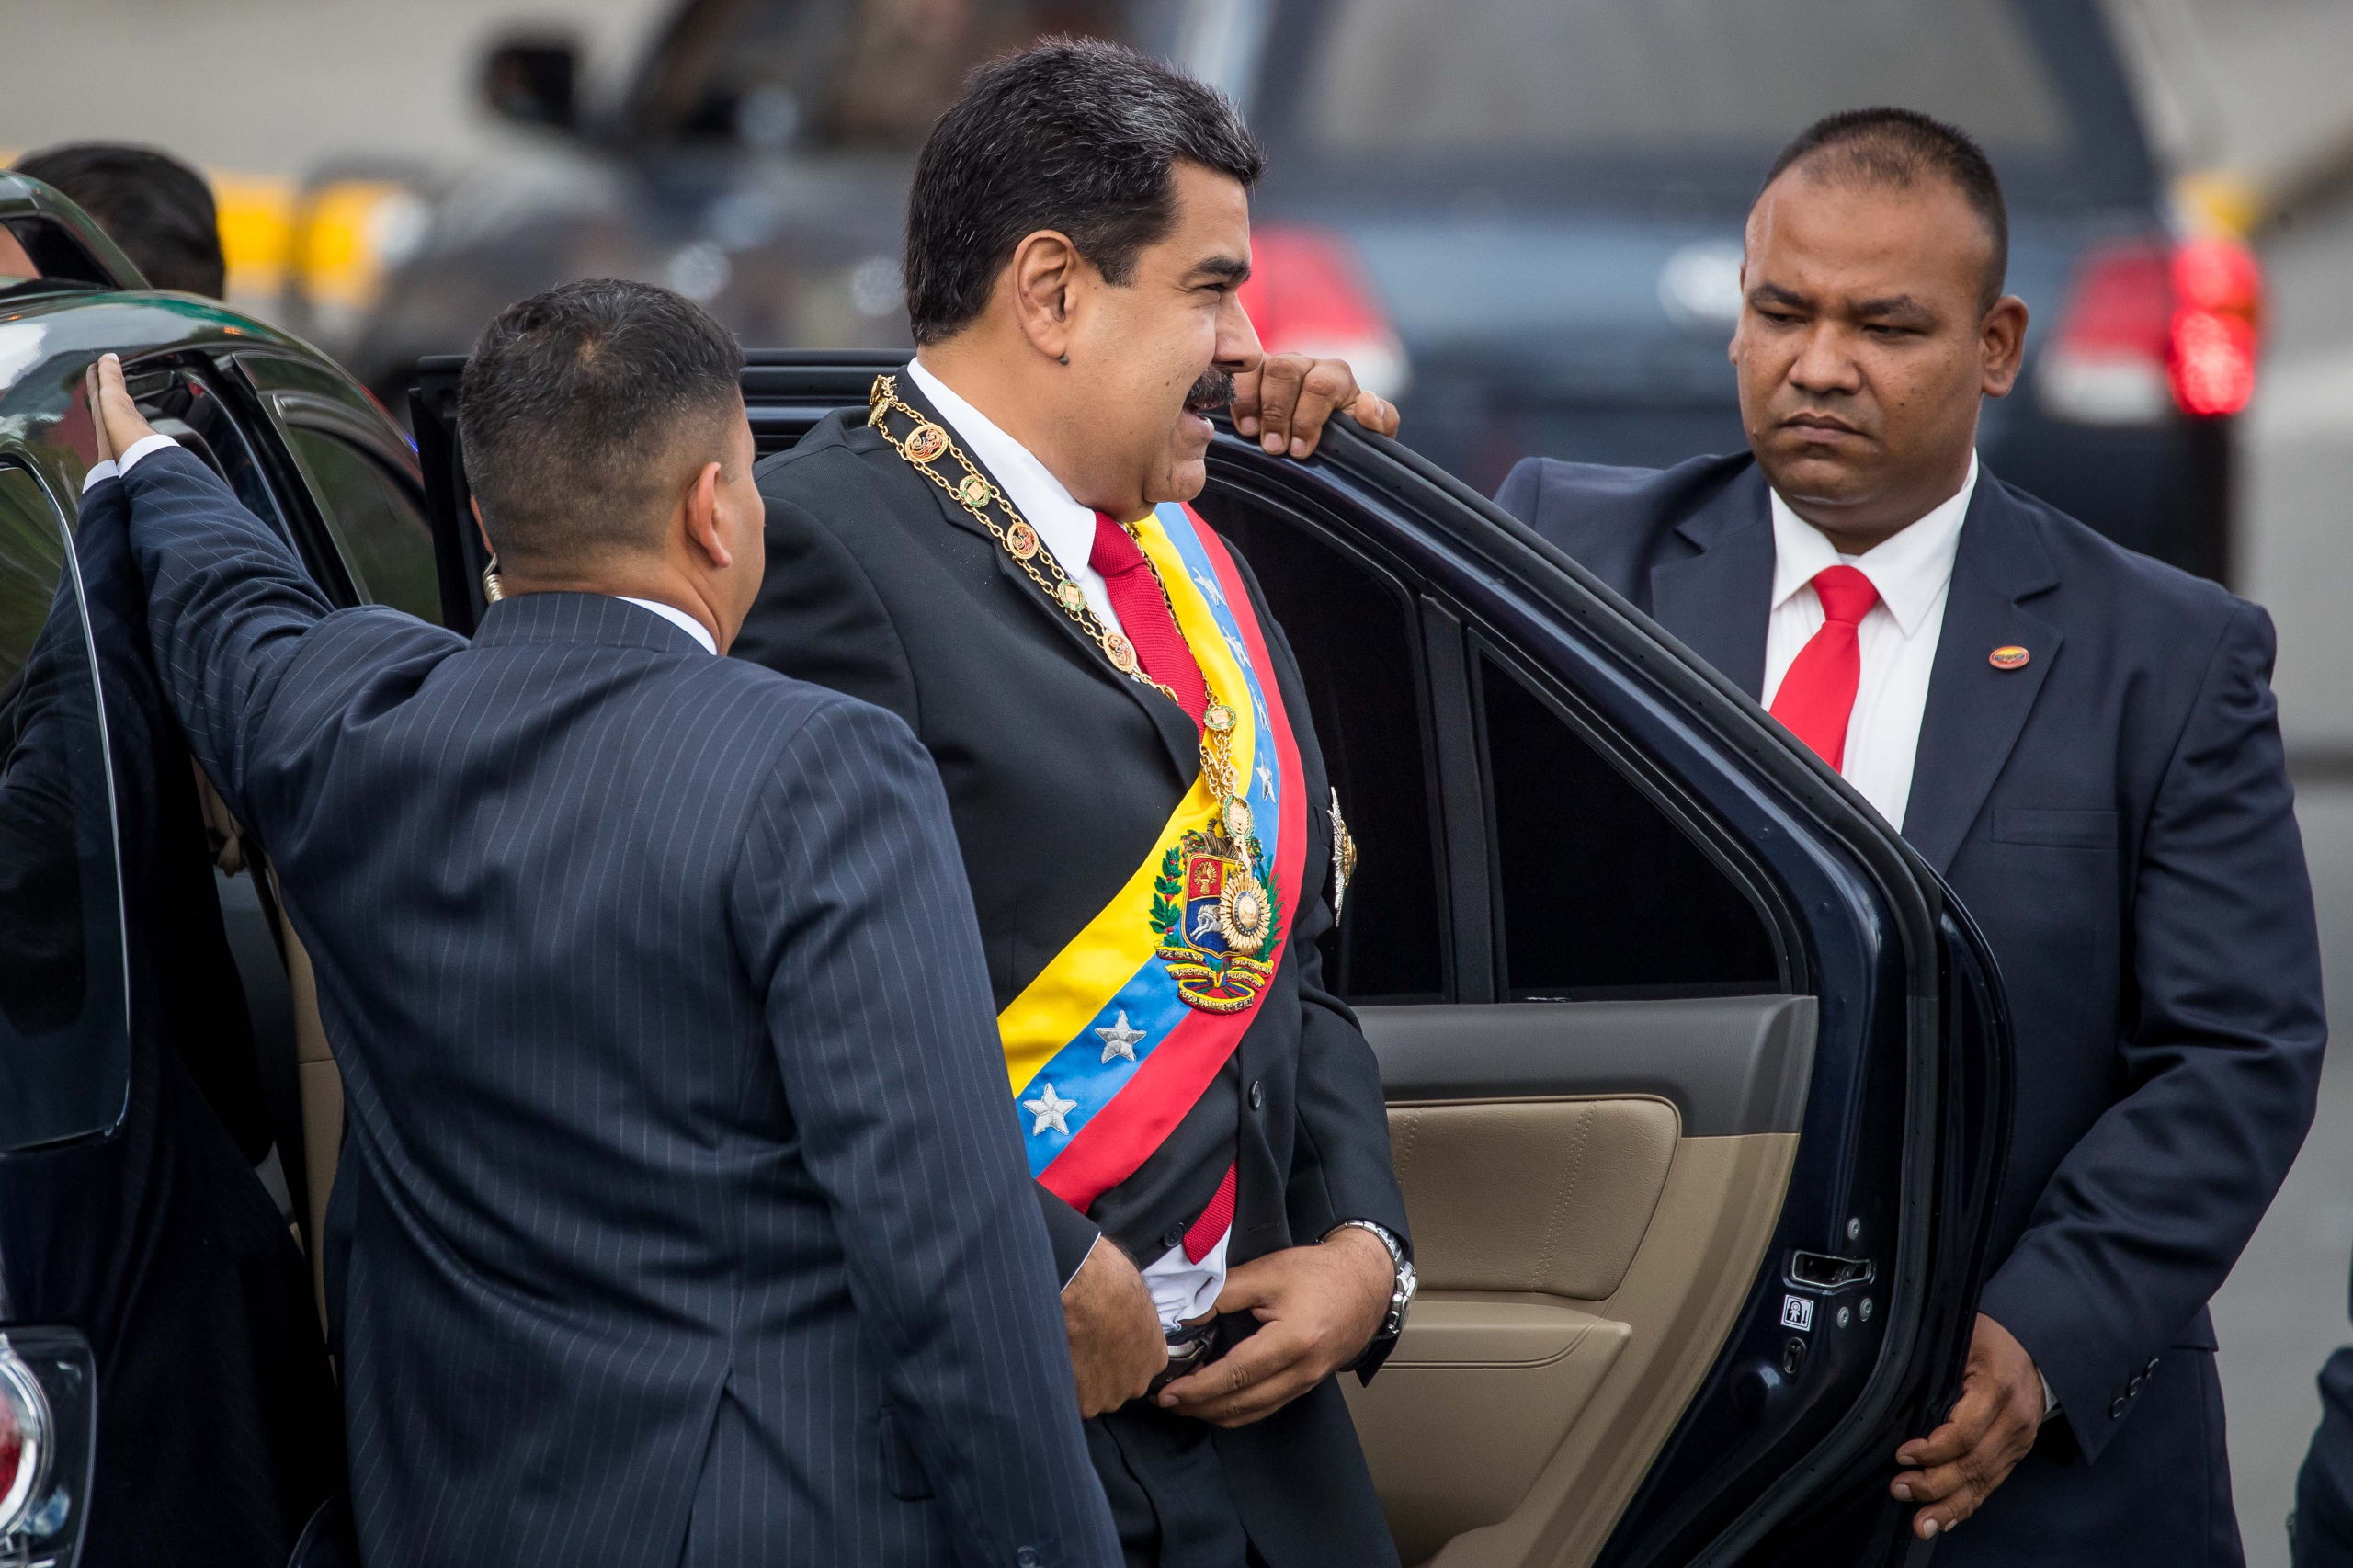 De Venezolaanse president Maduro arriveert bij het evenement waar het incident plaatsvond.